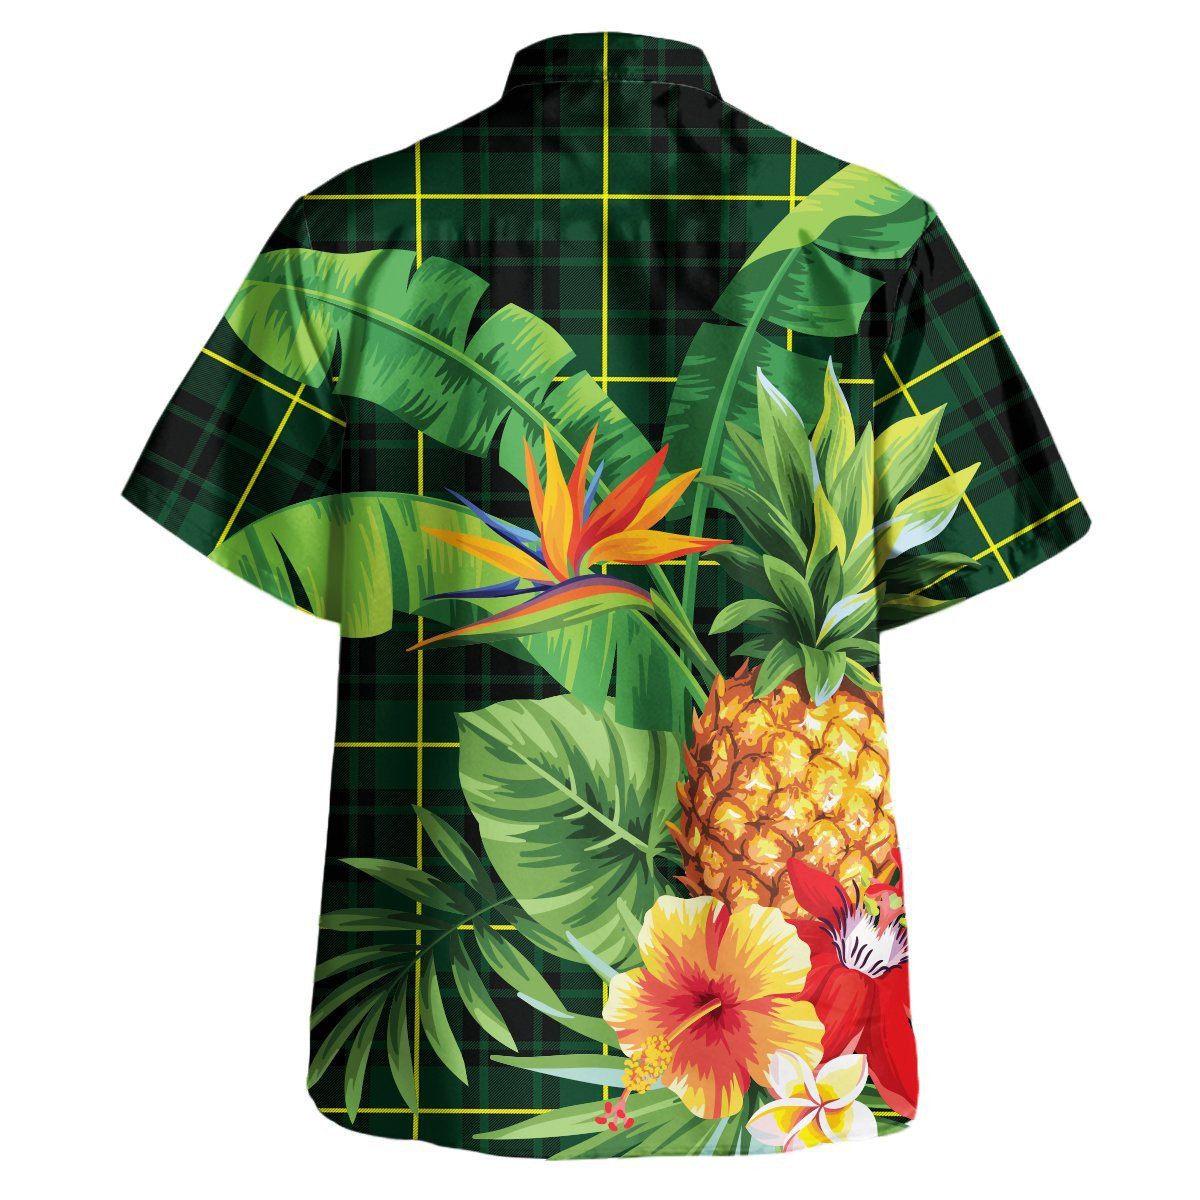 MacArthur Modern Tartan Aloha Shirt version 2